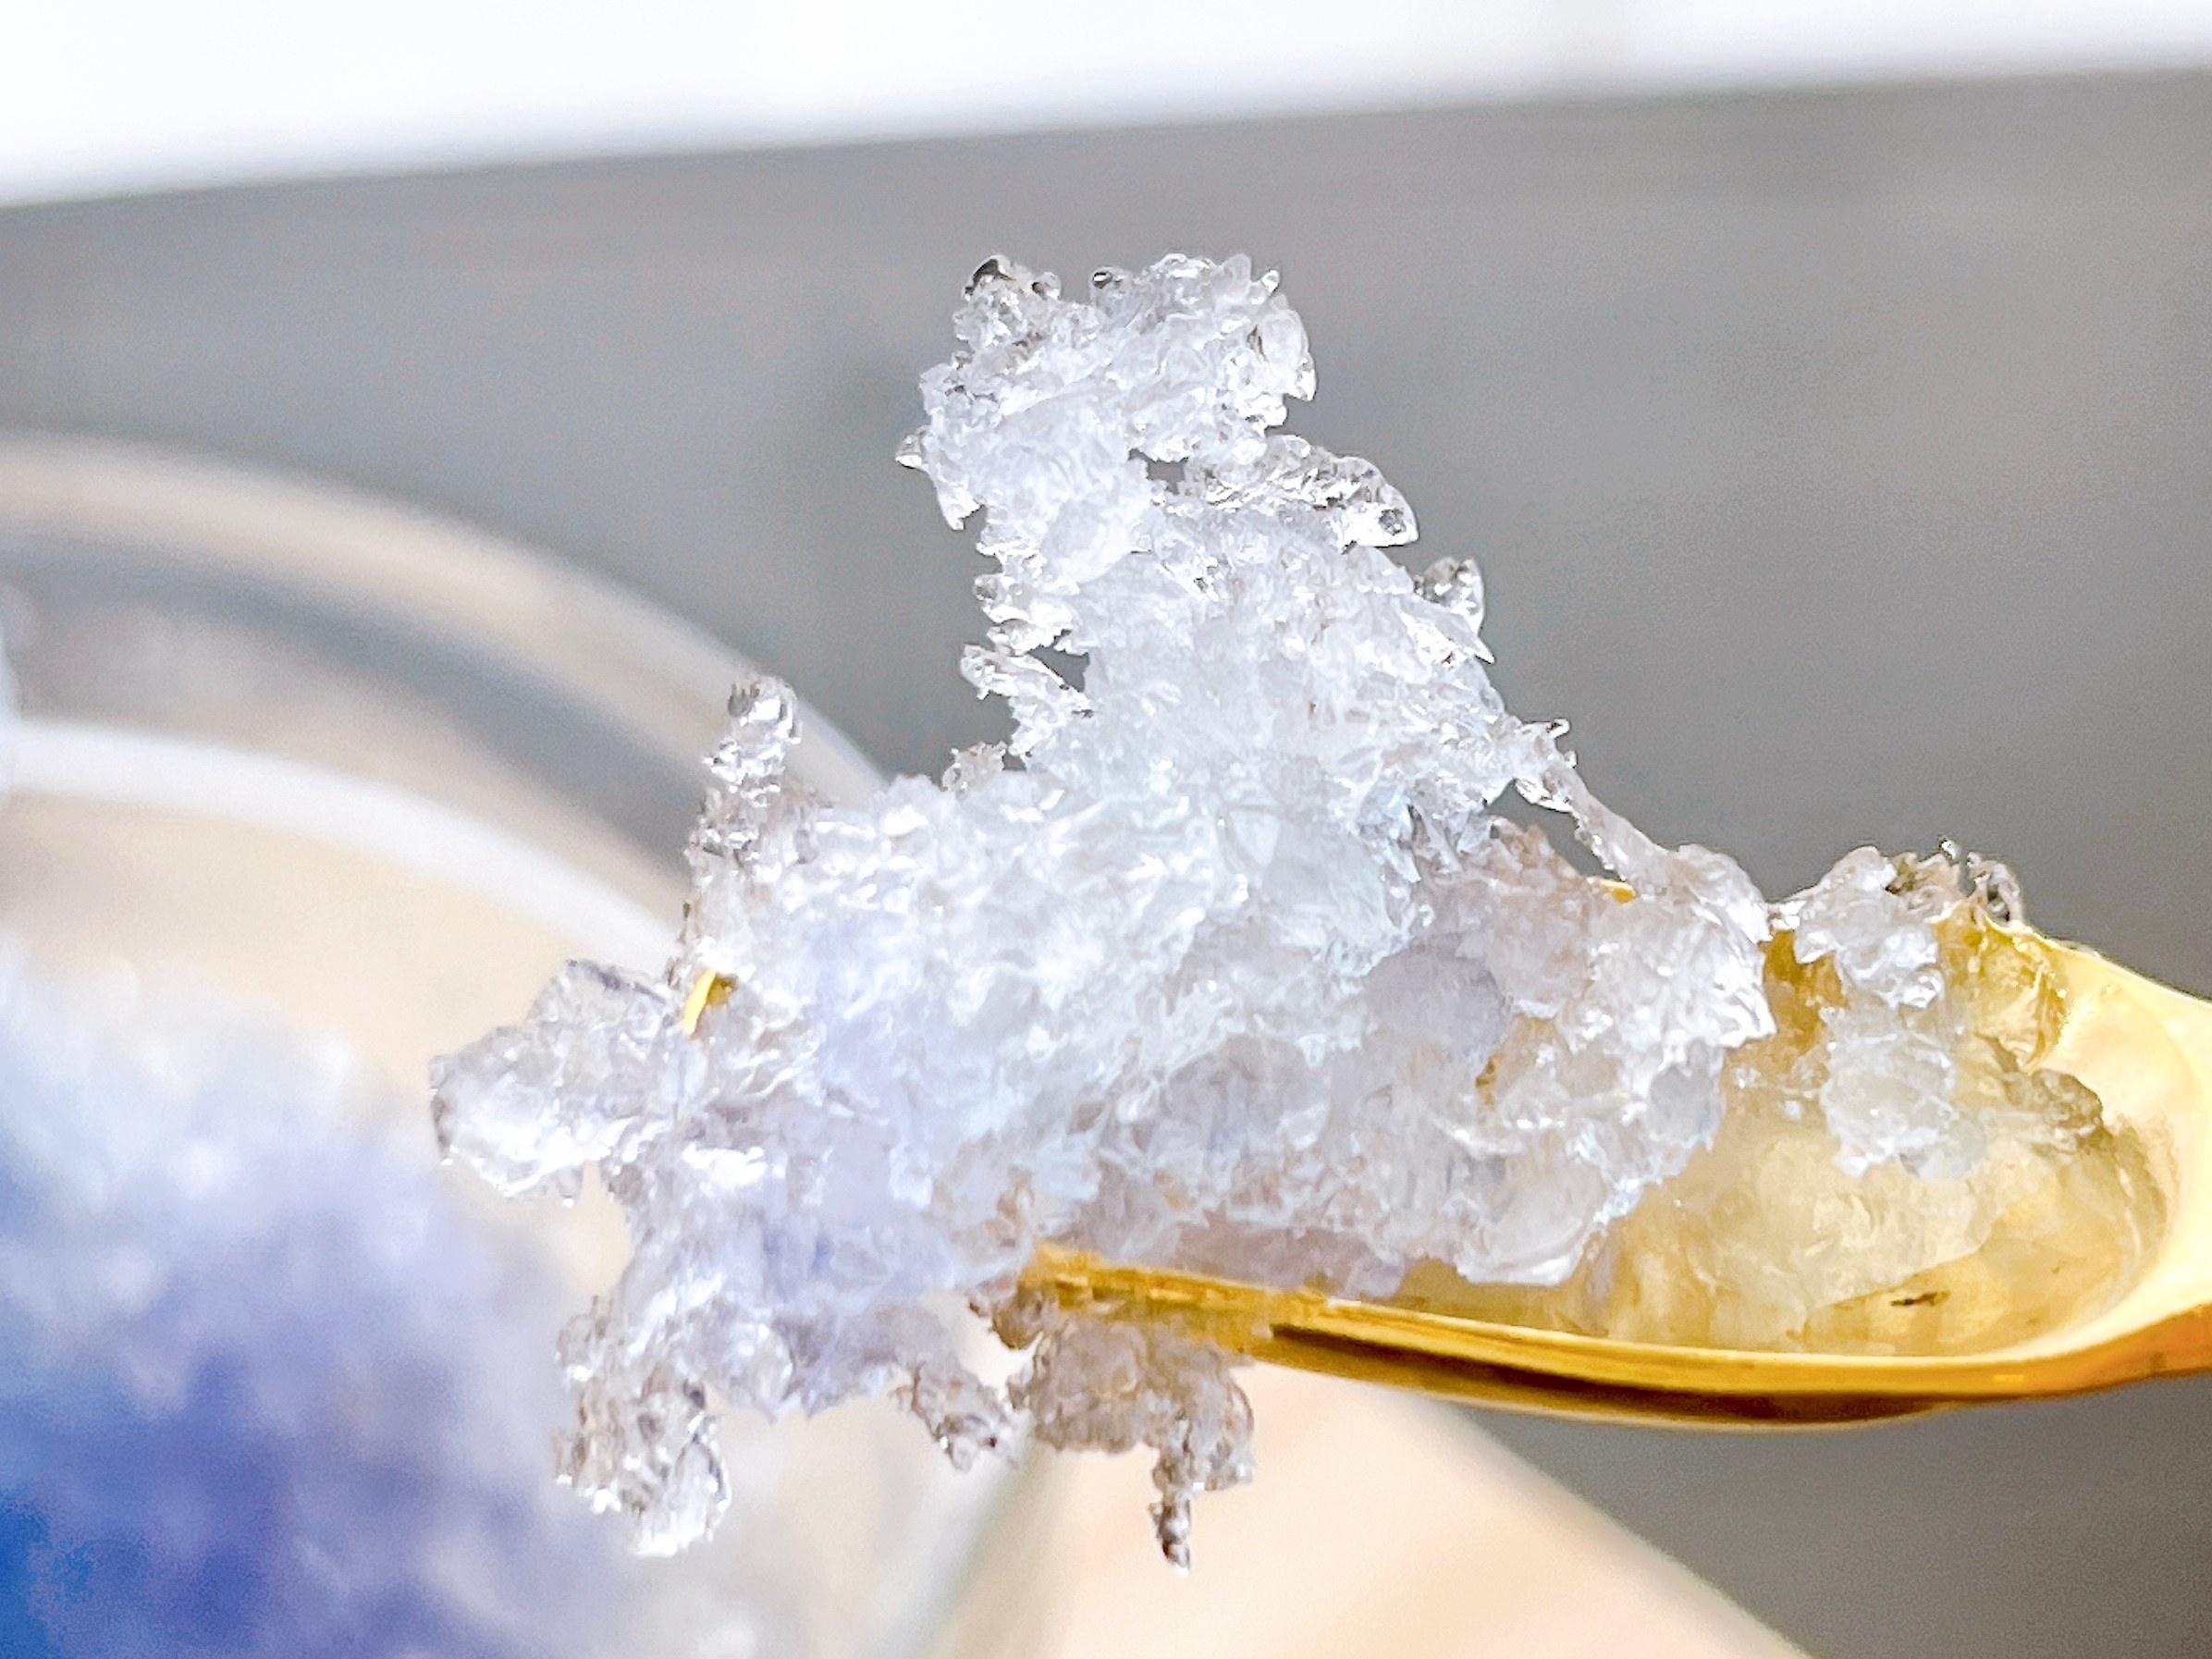 NITORI（ニトリ）のおすすめキッチンアイテム「収納を考えた手動式かき氷器」